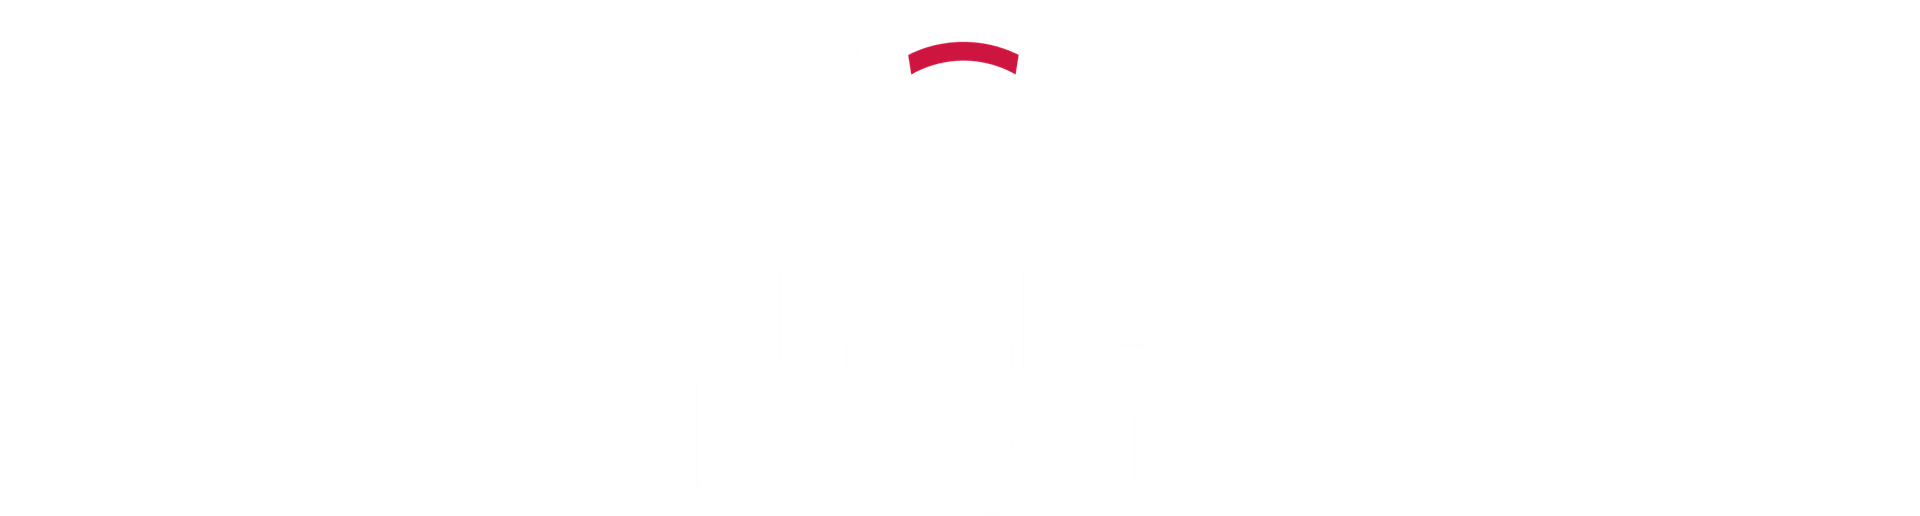 2020 Little League